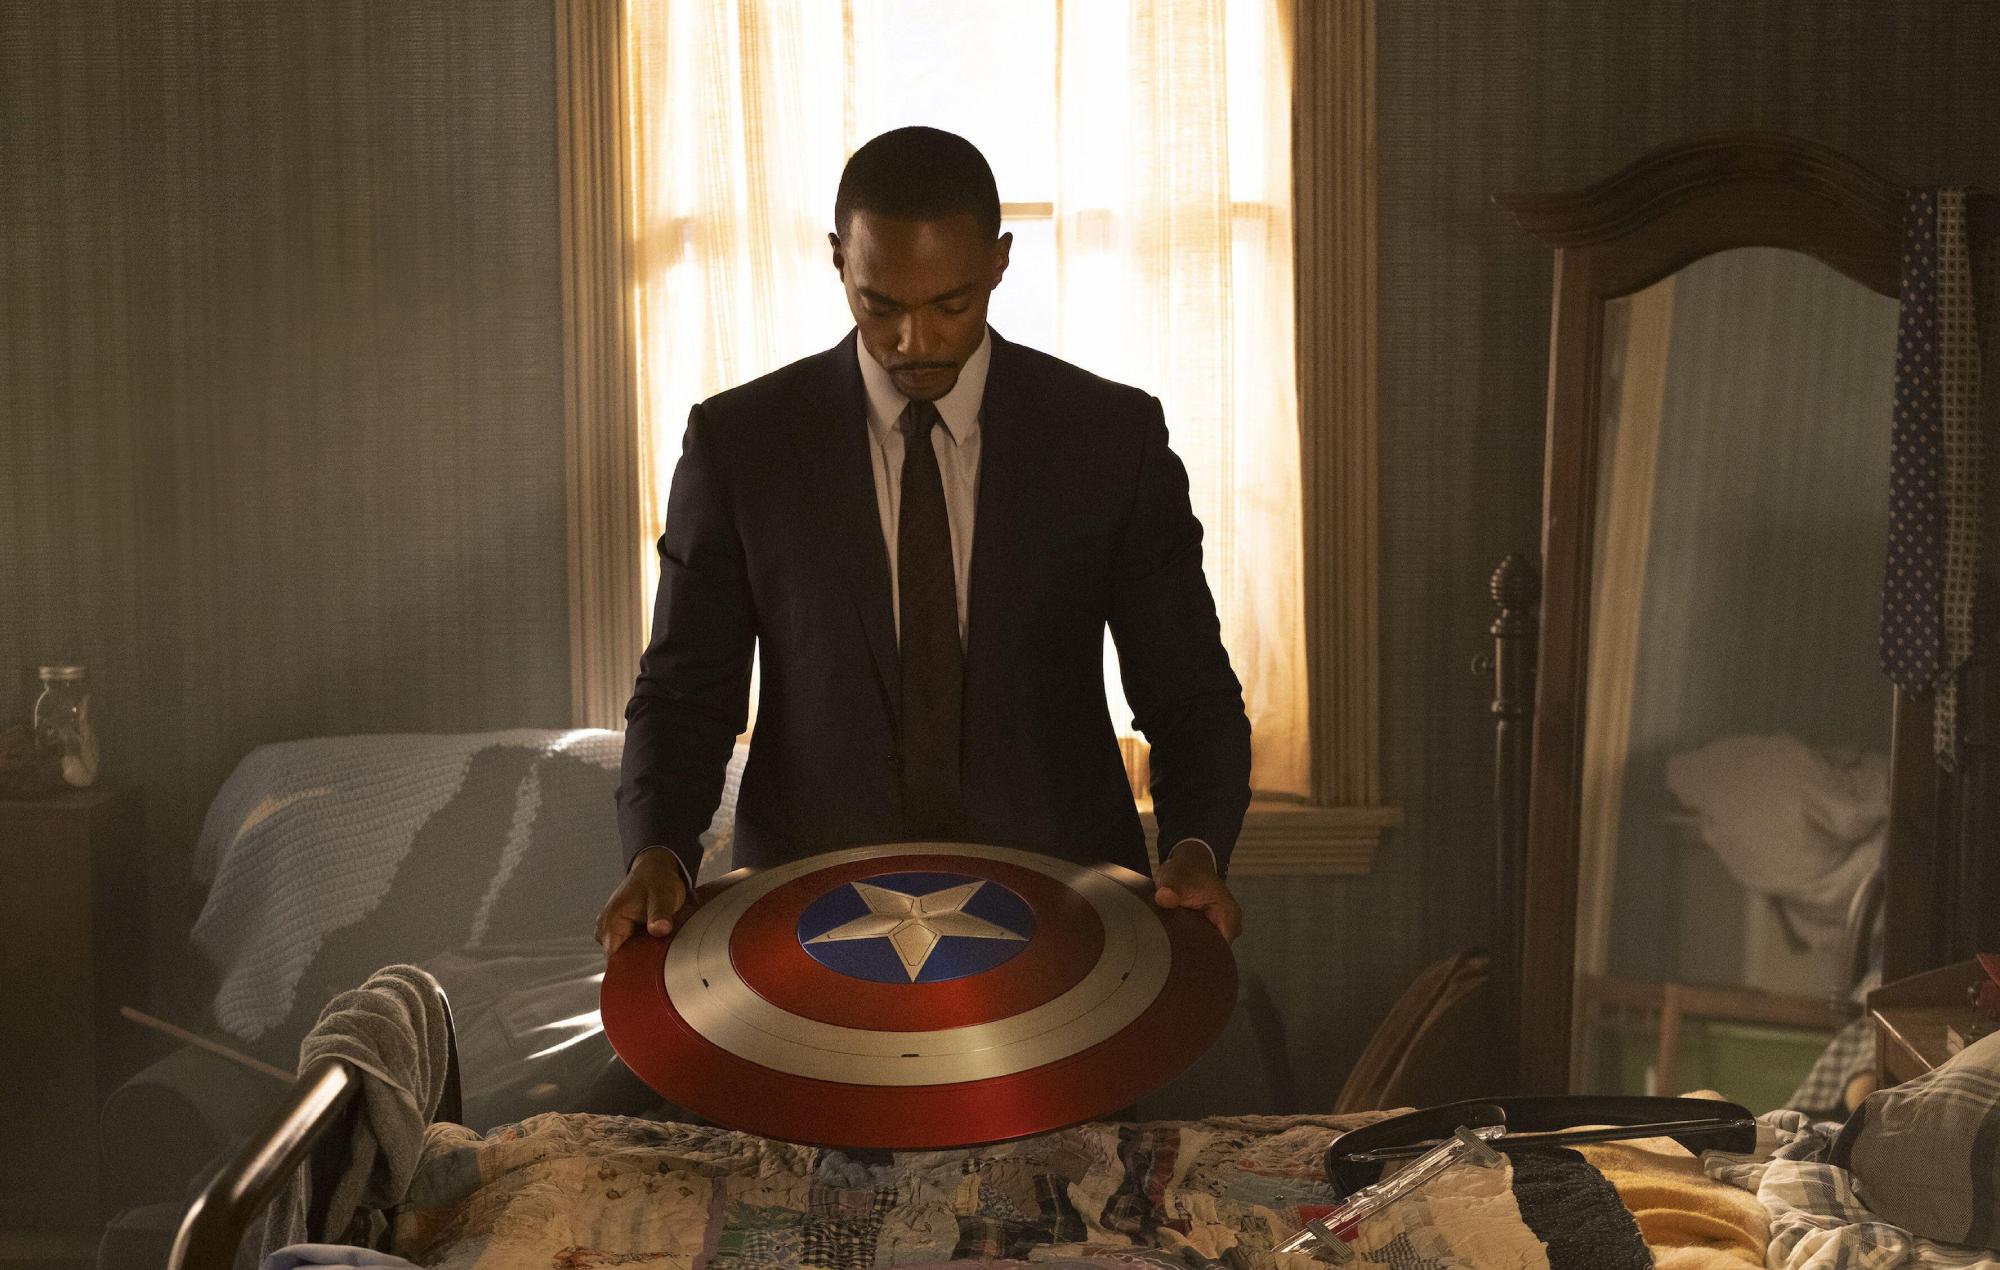 Anthony Mackie coincide con los comentarios de Tarantino sobre el Capitán América: "Marvel ha supuesto la muerte de la estrella de cine"